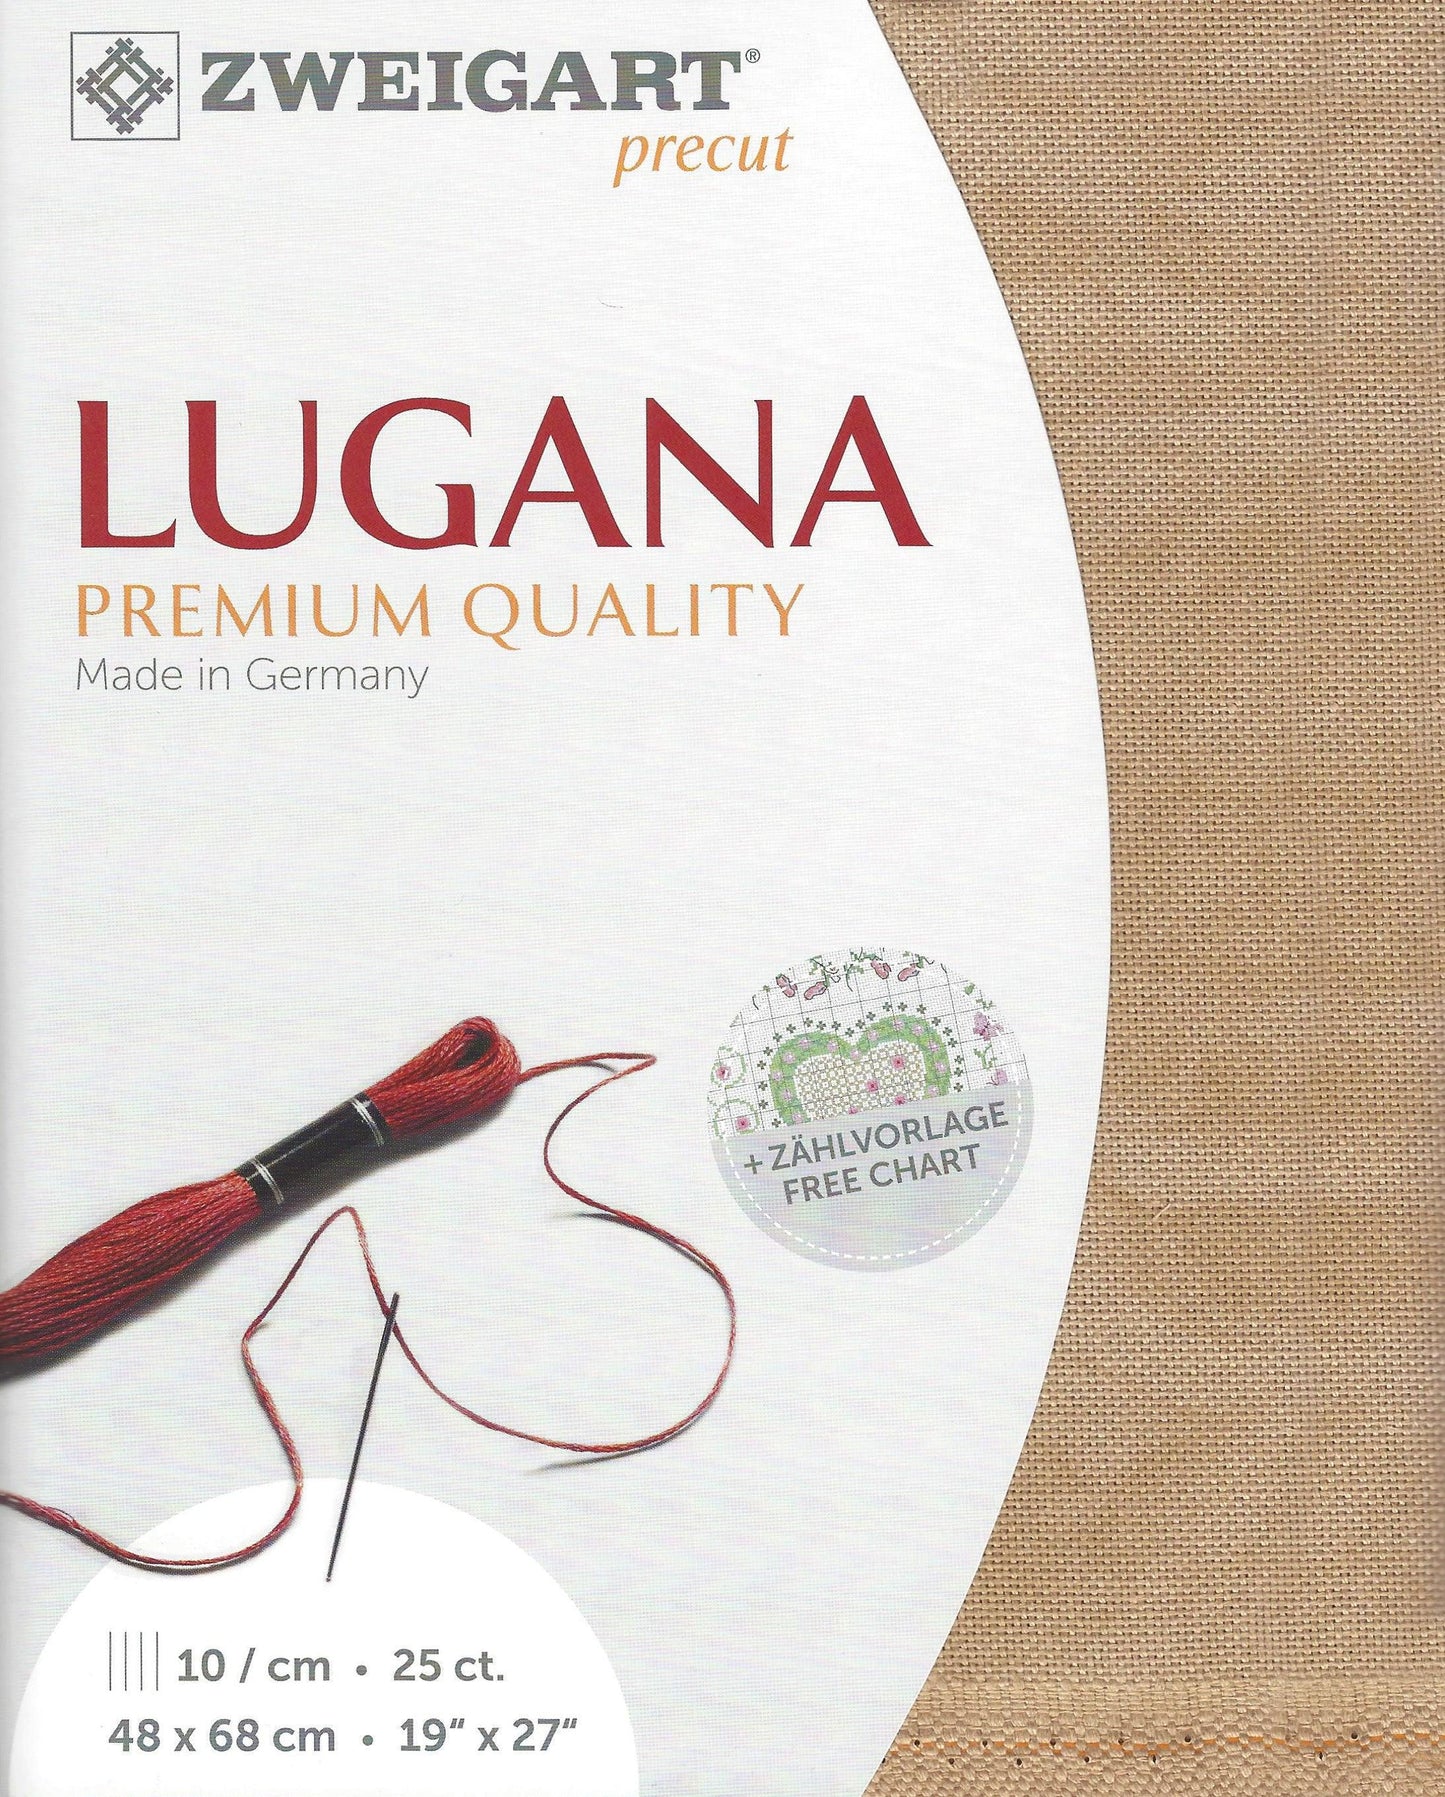 Zweigart Precut Lugana color 3009 Light Mocha Fabric Cut 48 x 68 cm (19" x 27"), 10 Threads / cm - 25 ct (3835/3009)